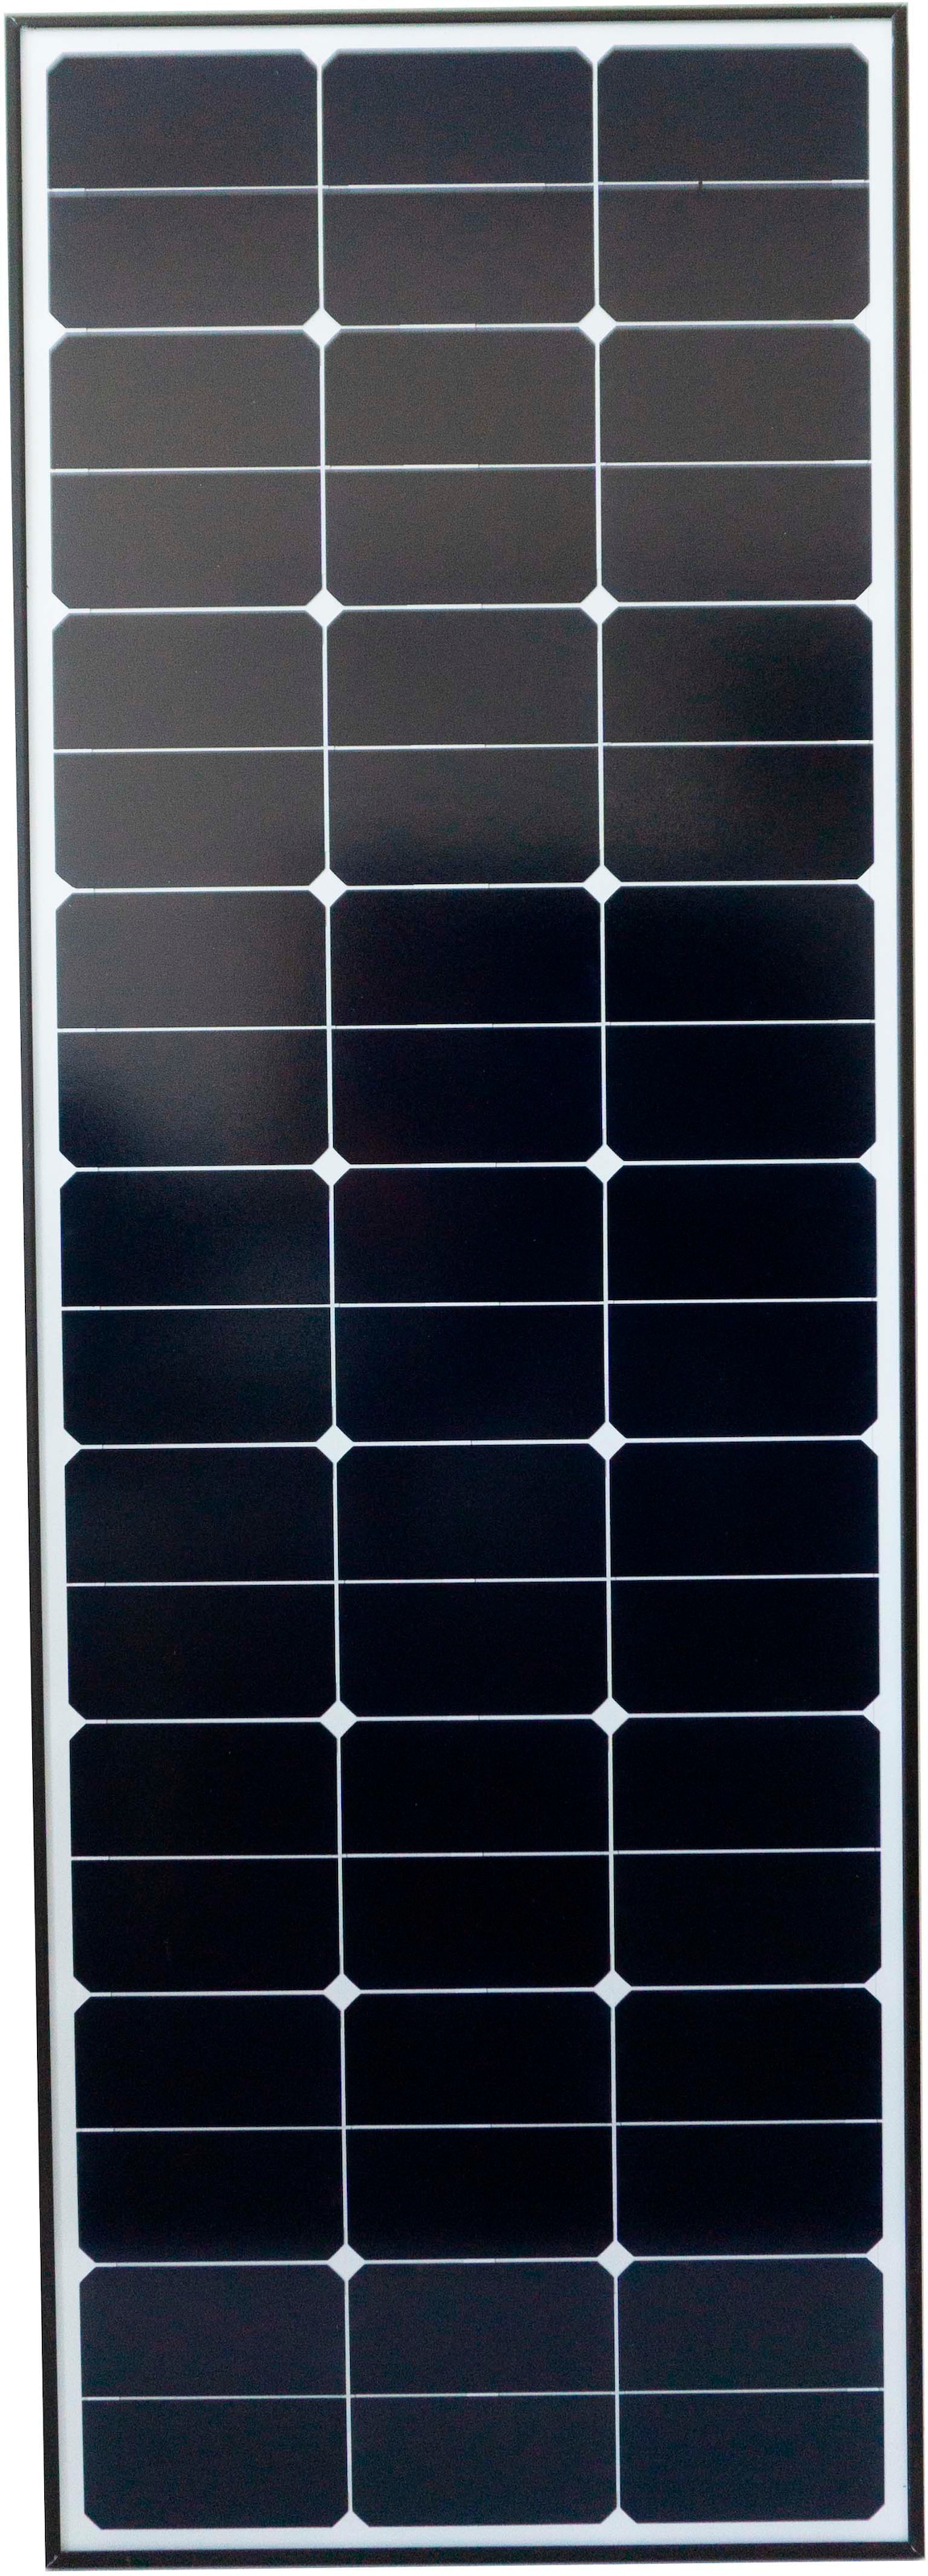 Phaesun Solarmodul »»Solar Module Phaesun Sun Peak SPR 100 S HV black««, (1 St.)